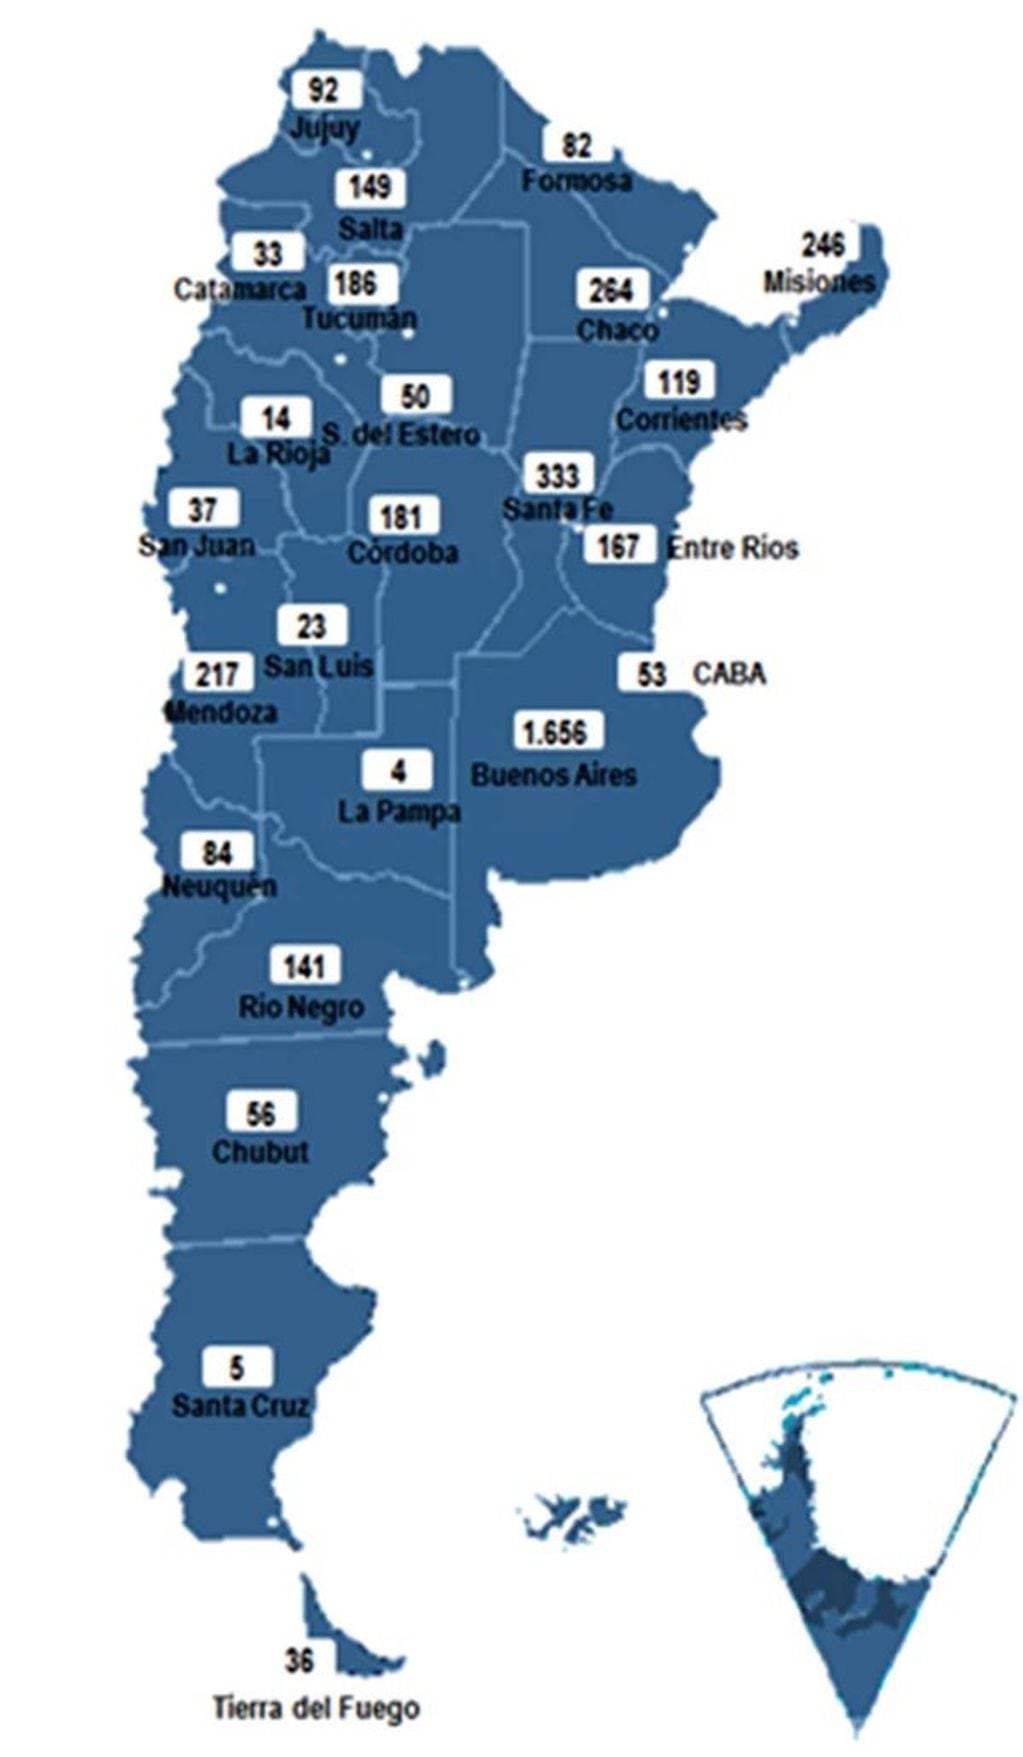 Localización de villas en Argentina, provincia a provincia.